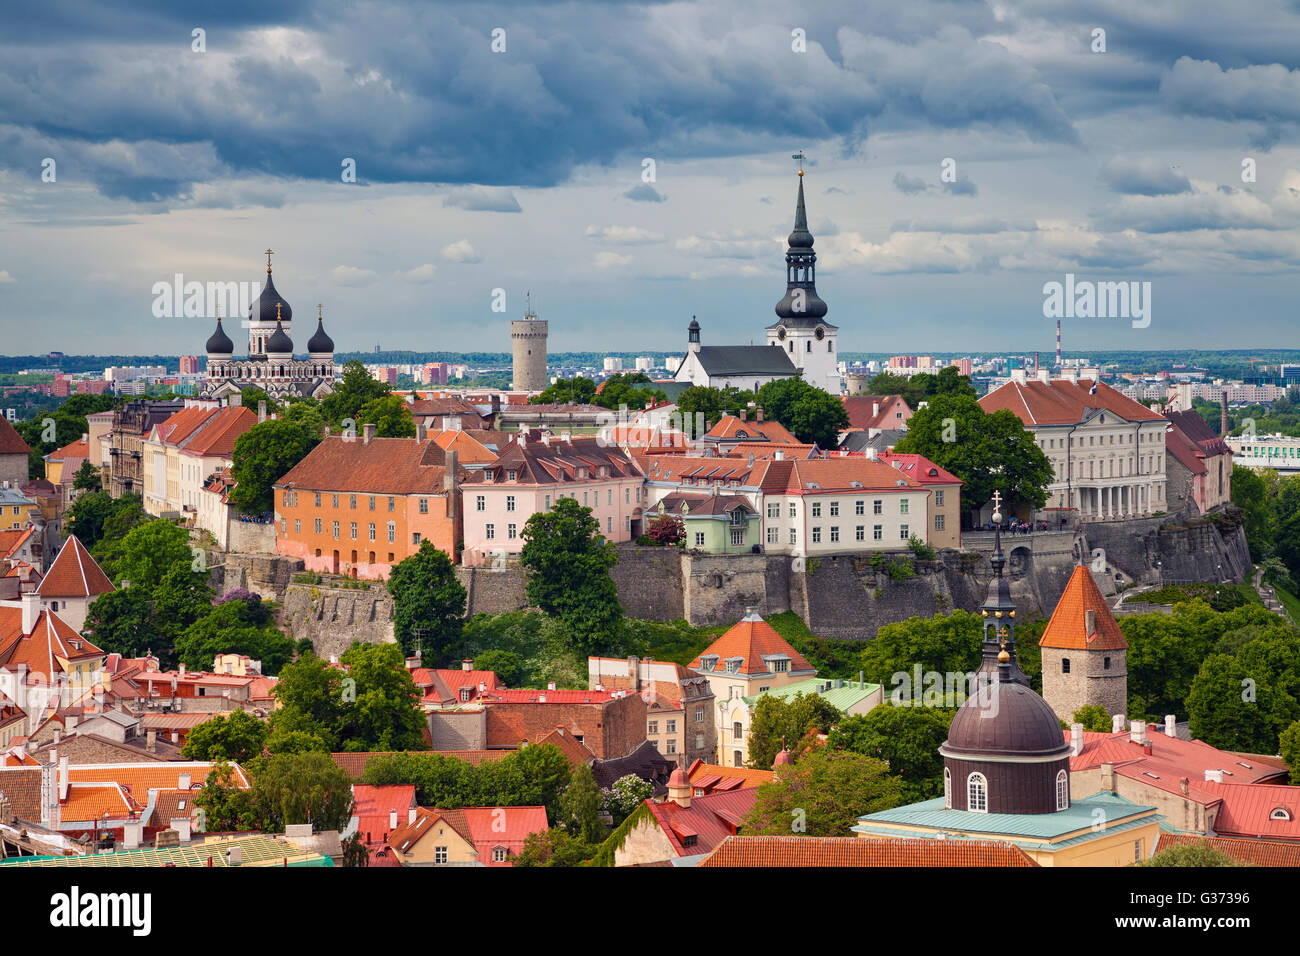 Tallinn. immagine aerea della città vecchia di Tallinn in Estonia. Foto Stock